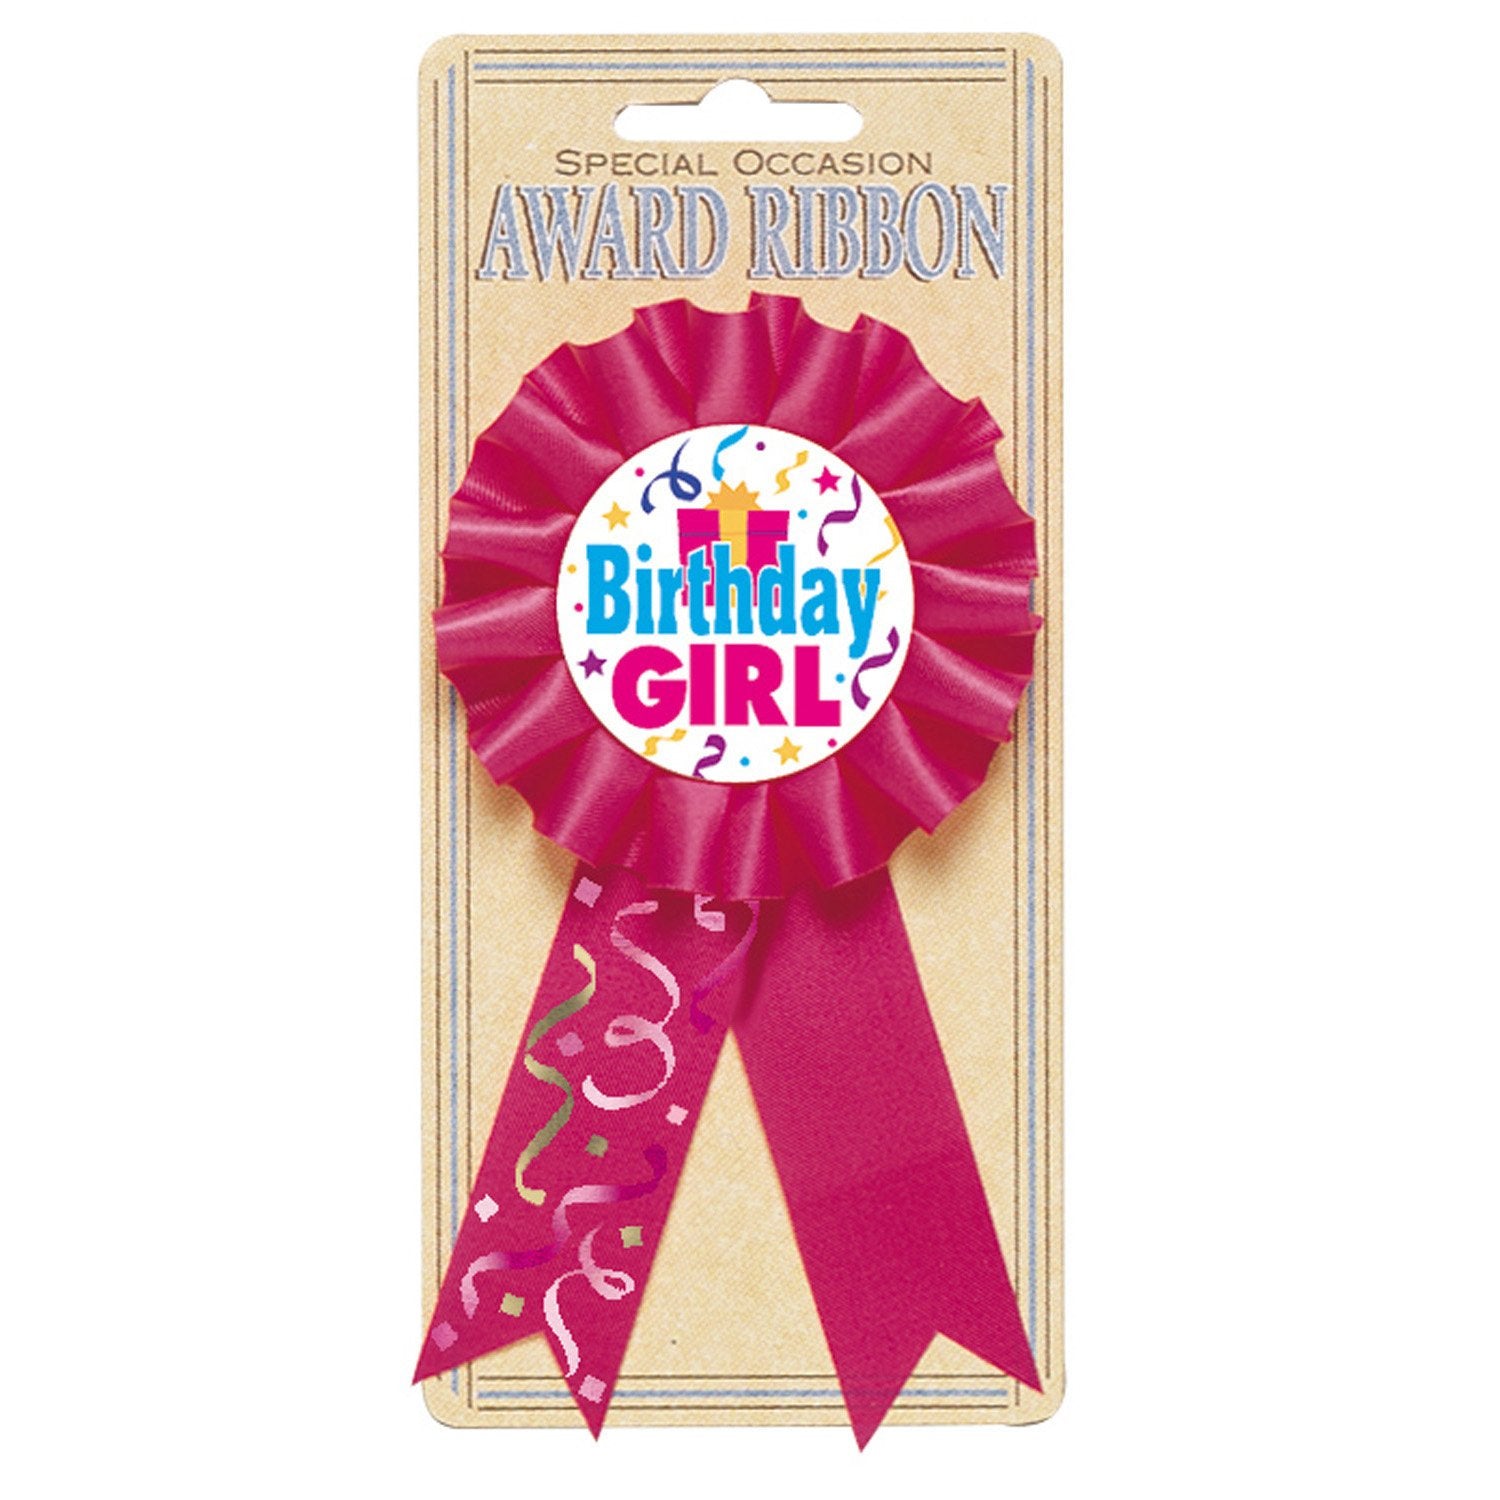 Girl's birthday medal 15.2 cm